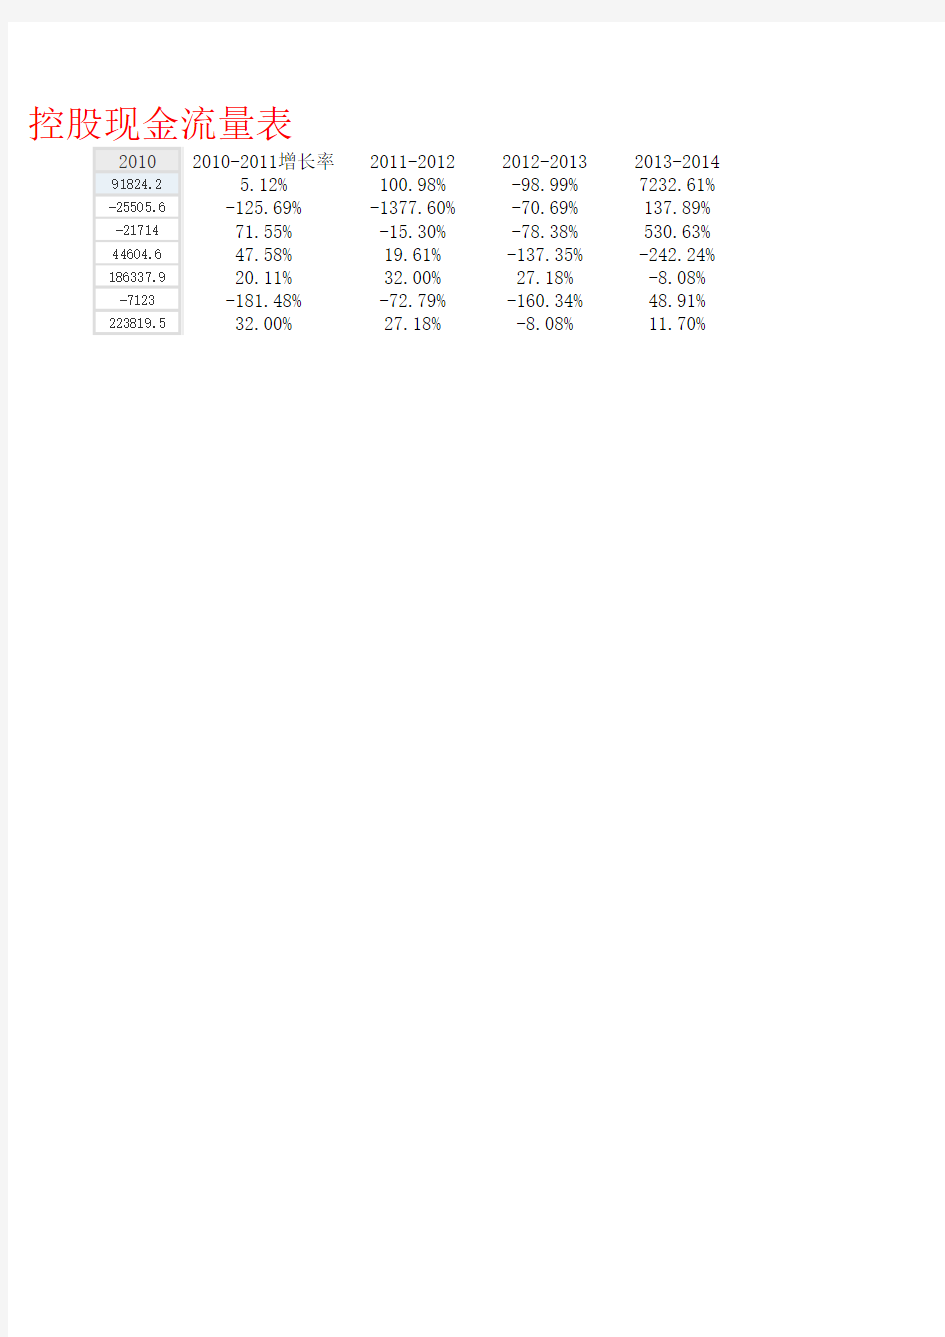 联想2011-2015资产负债表等三表